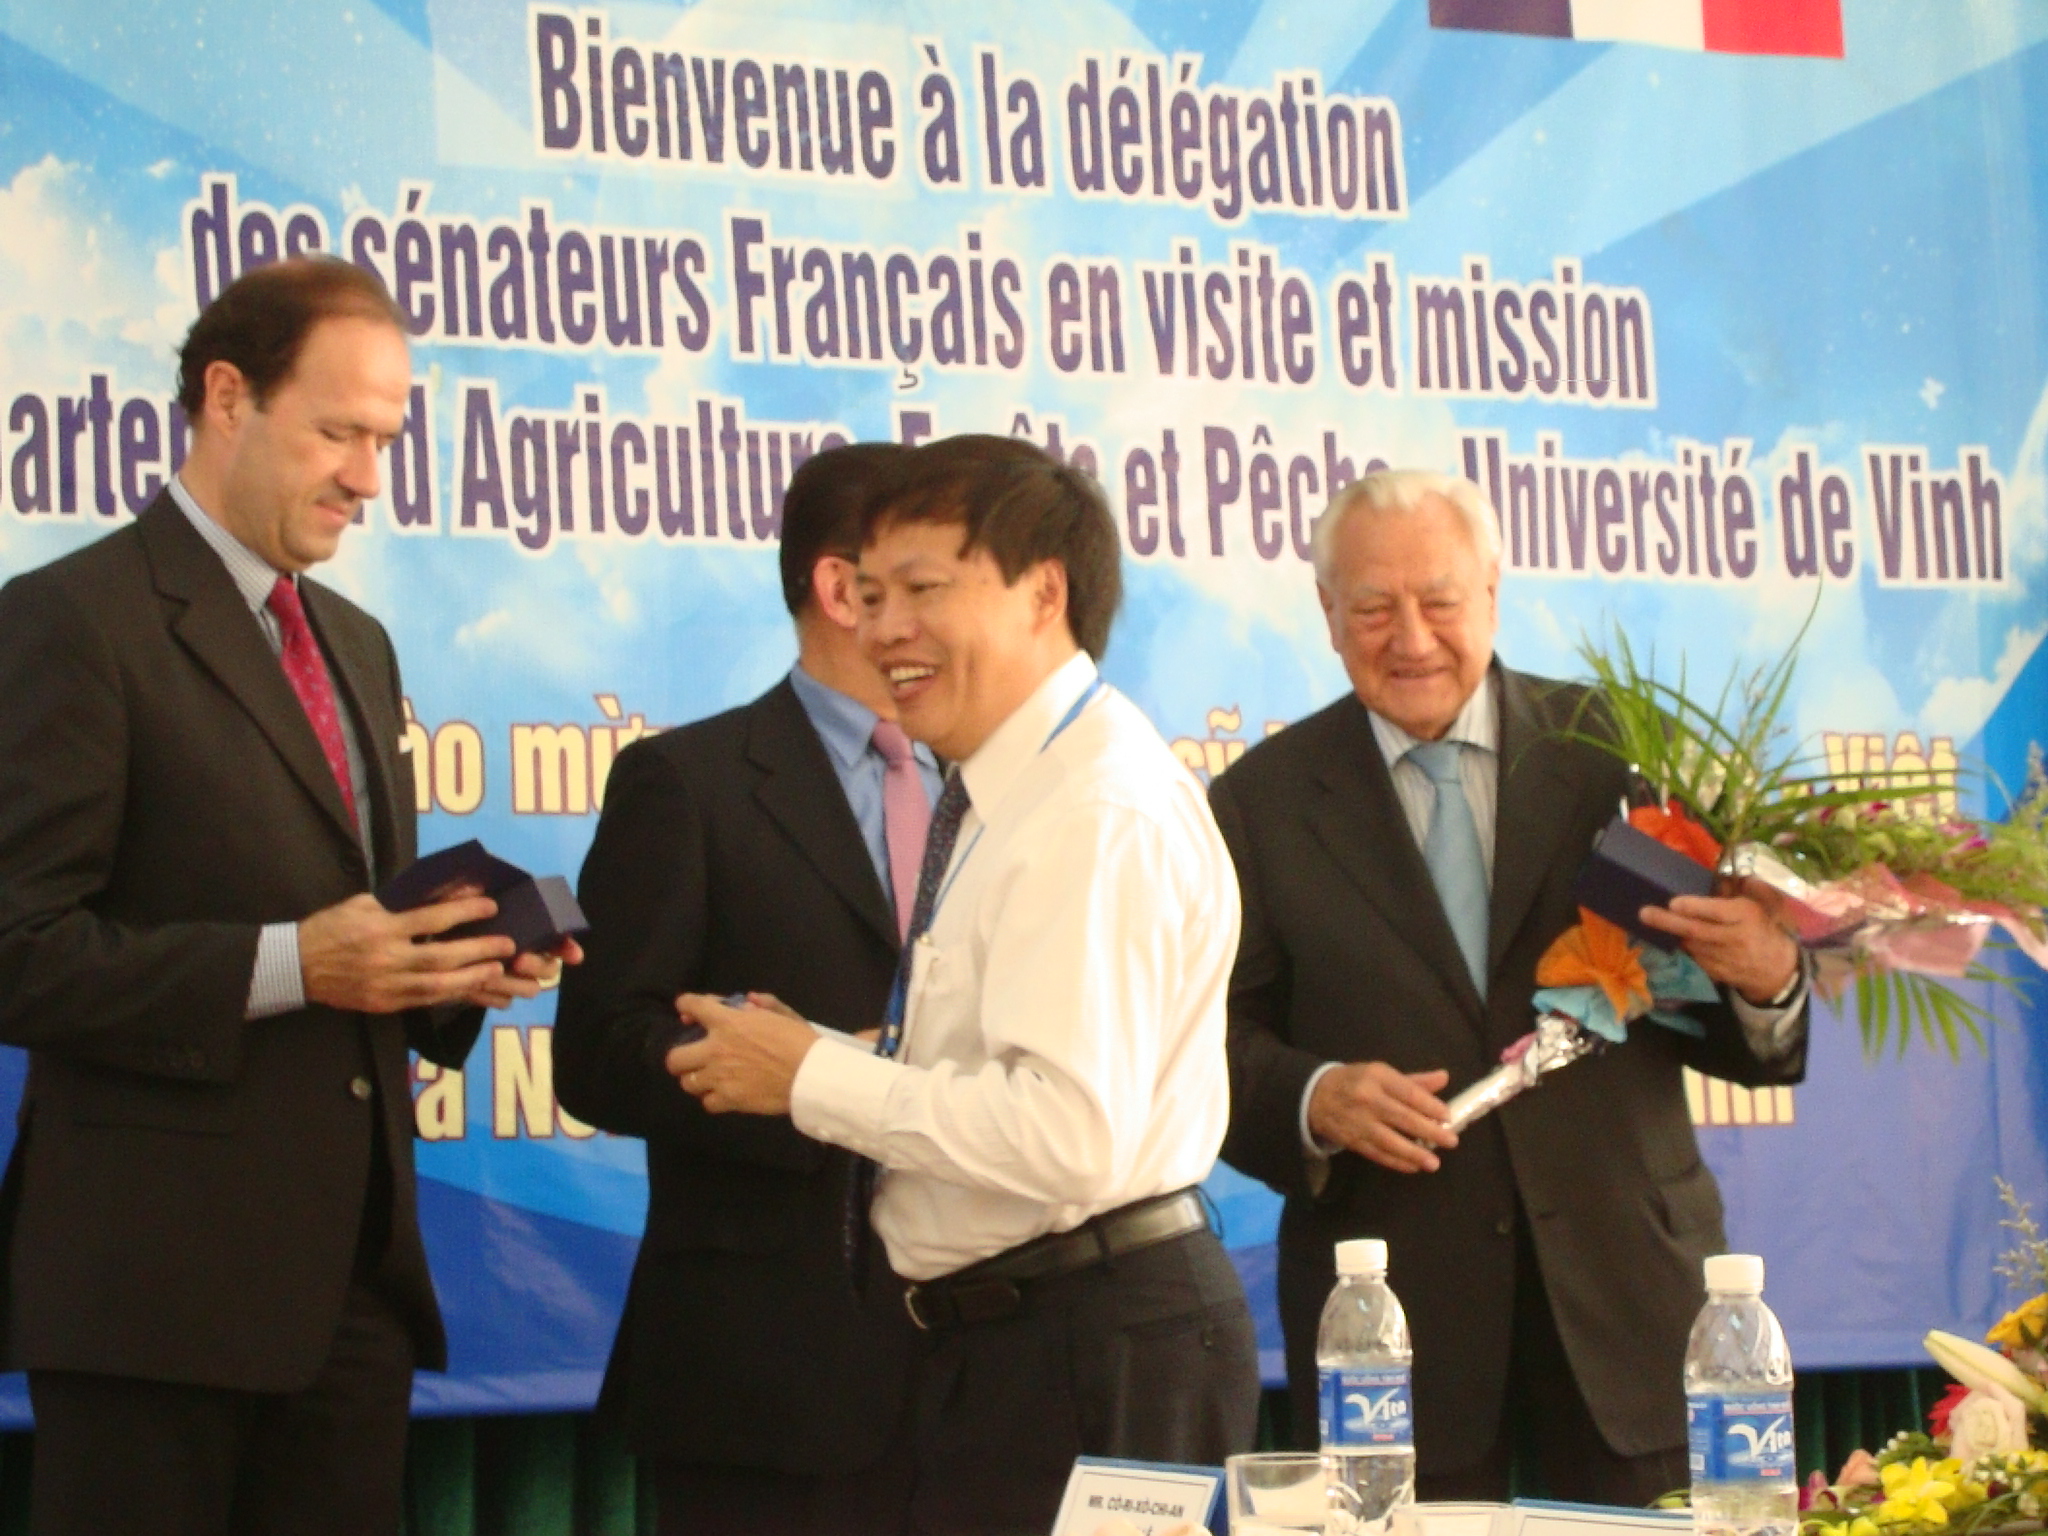 Đoàn thượng nghị sĩ Pháp đến thăm và làm việc với Khoa Nông Lâm Ngư – Đại học Vinh